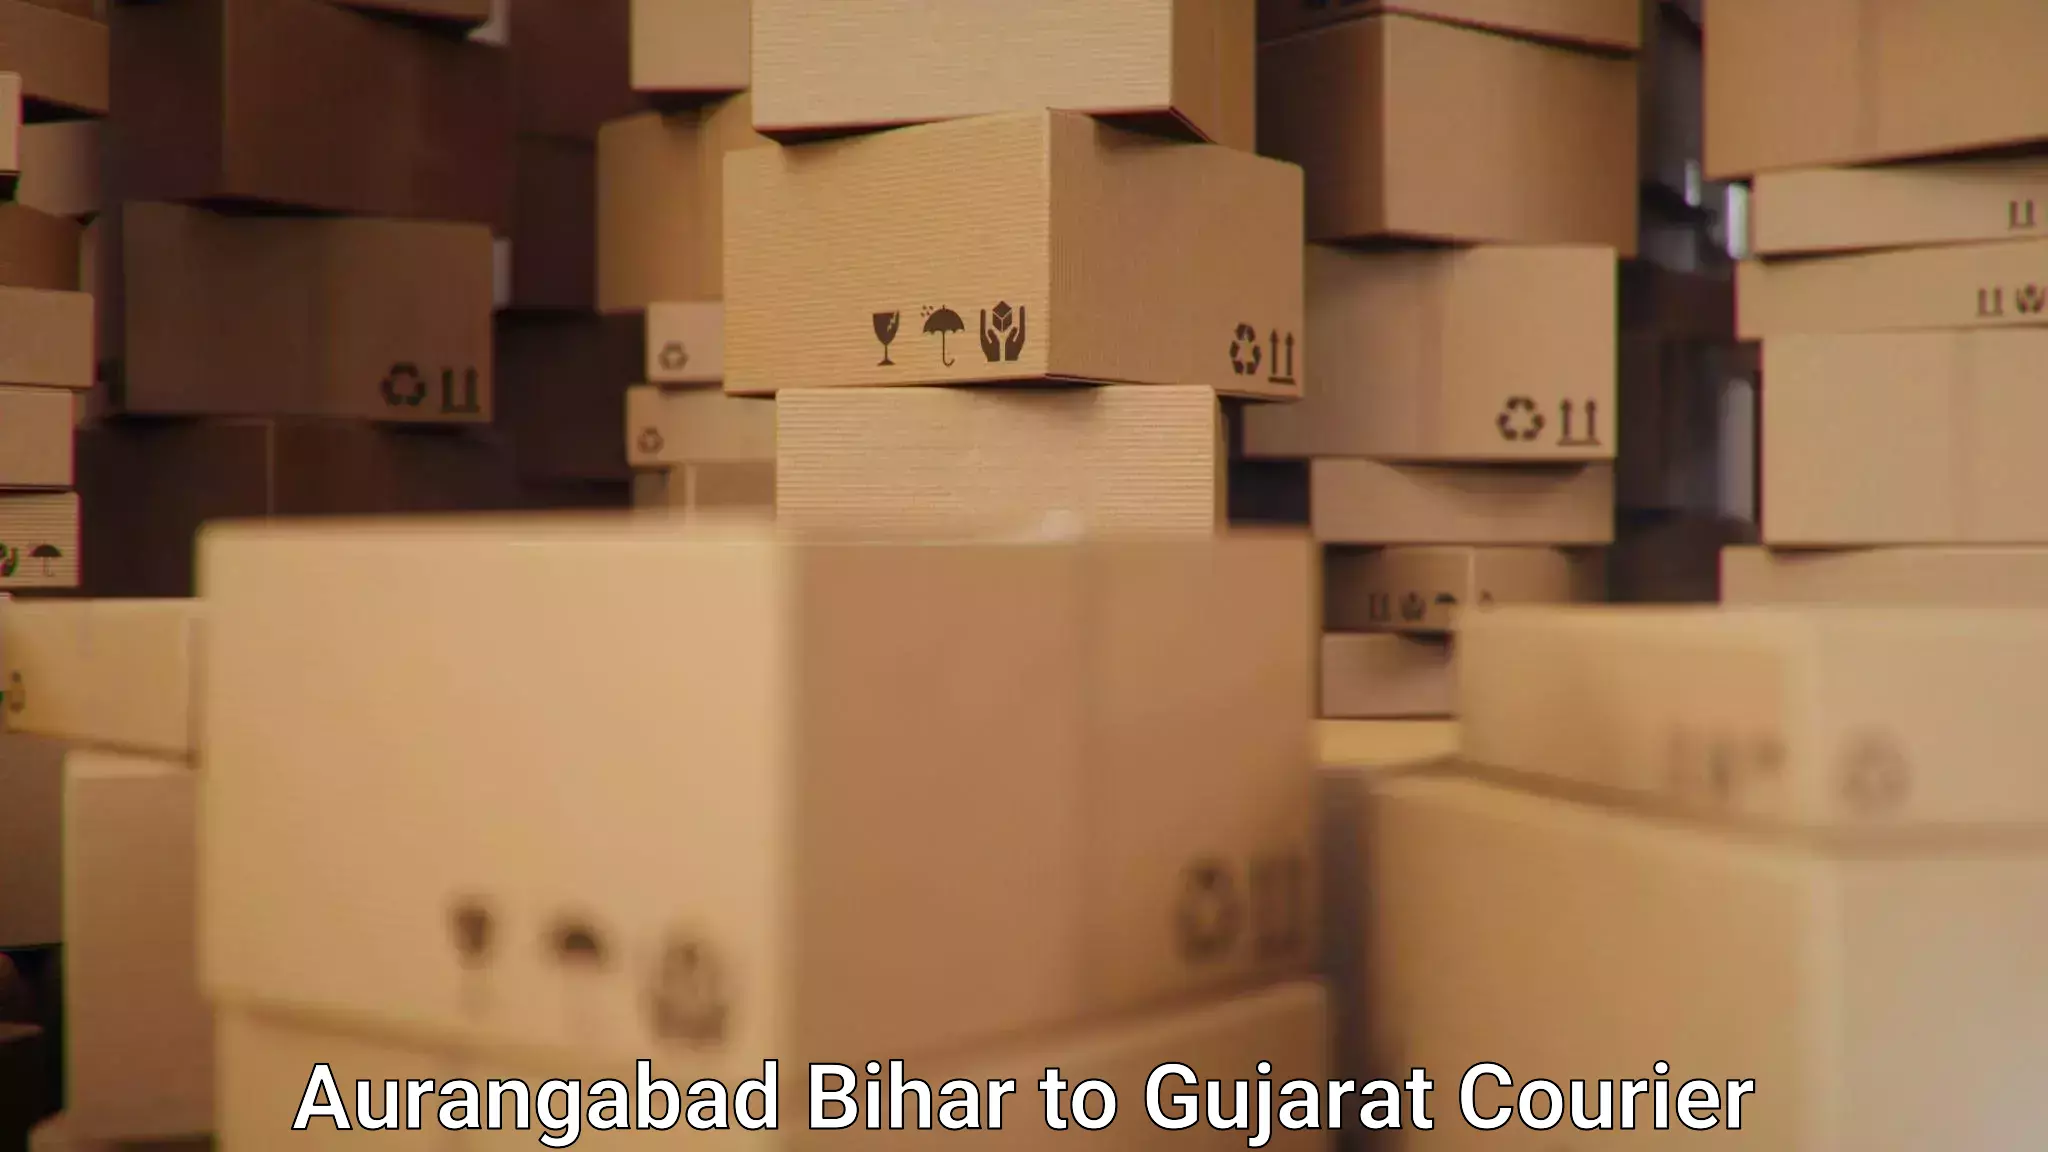 Professional courier handling Aurangabad Bihar to Gujarat